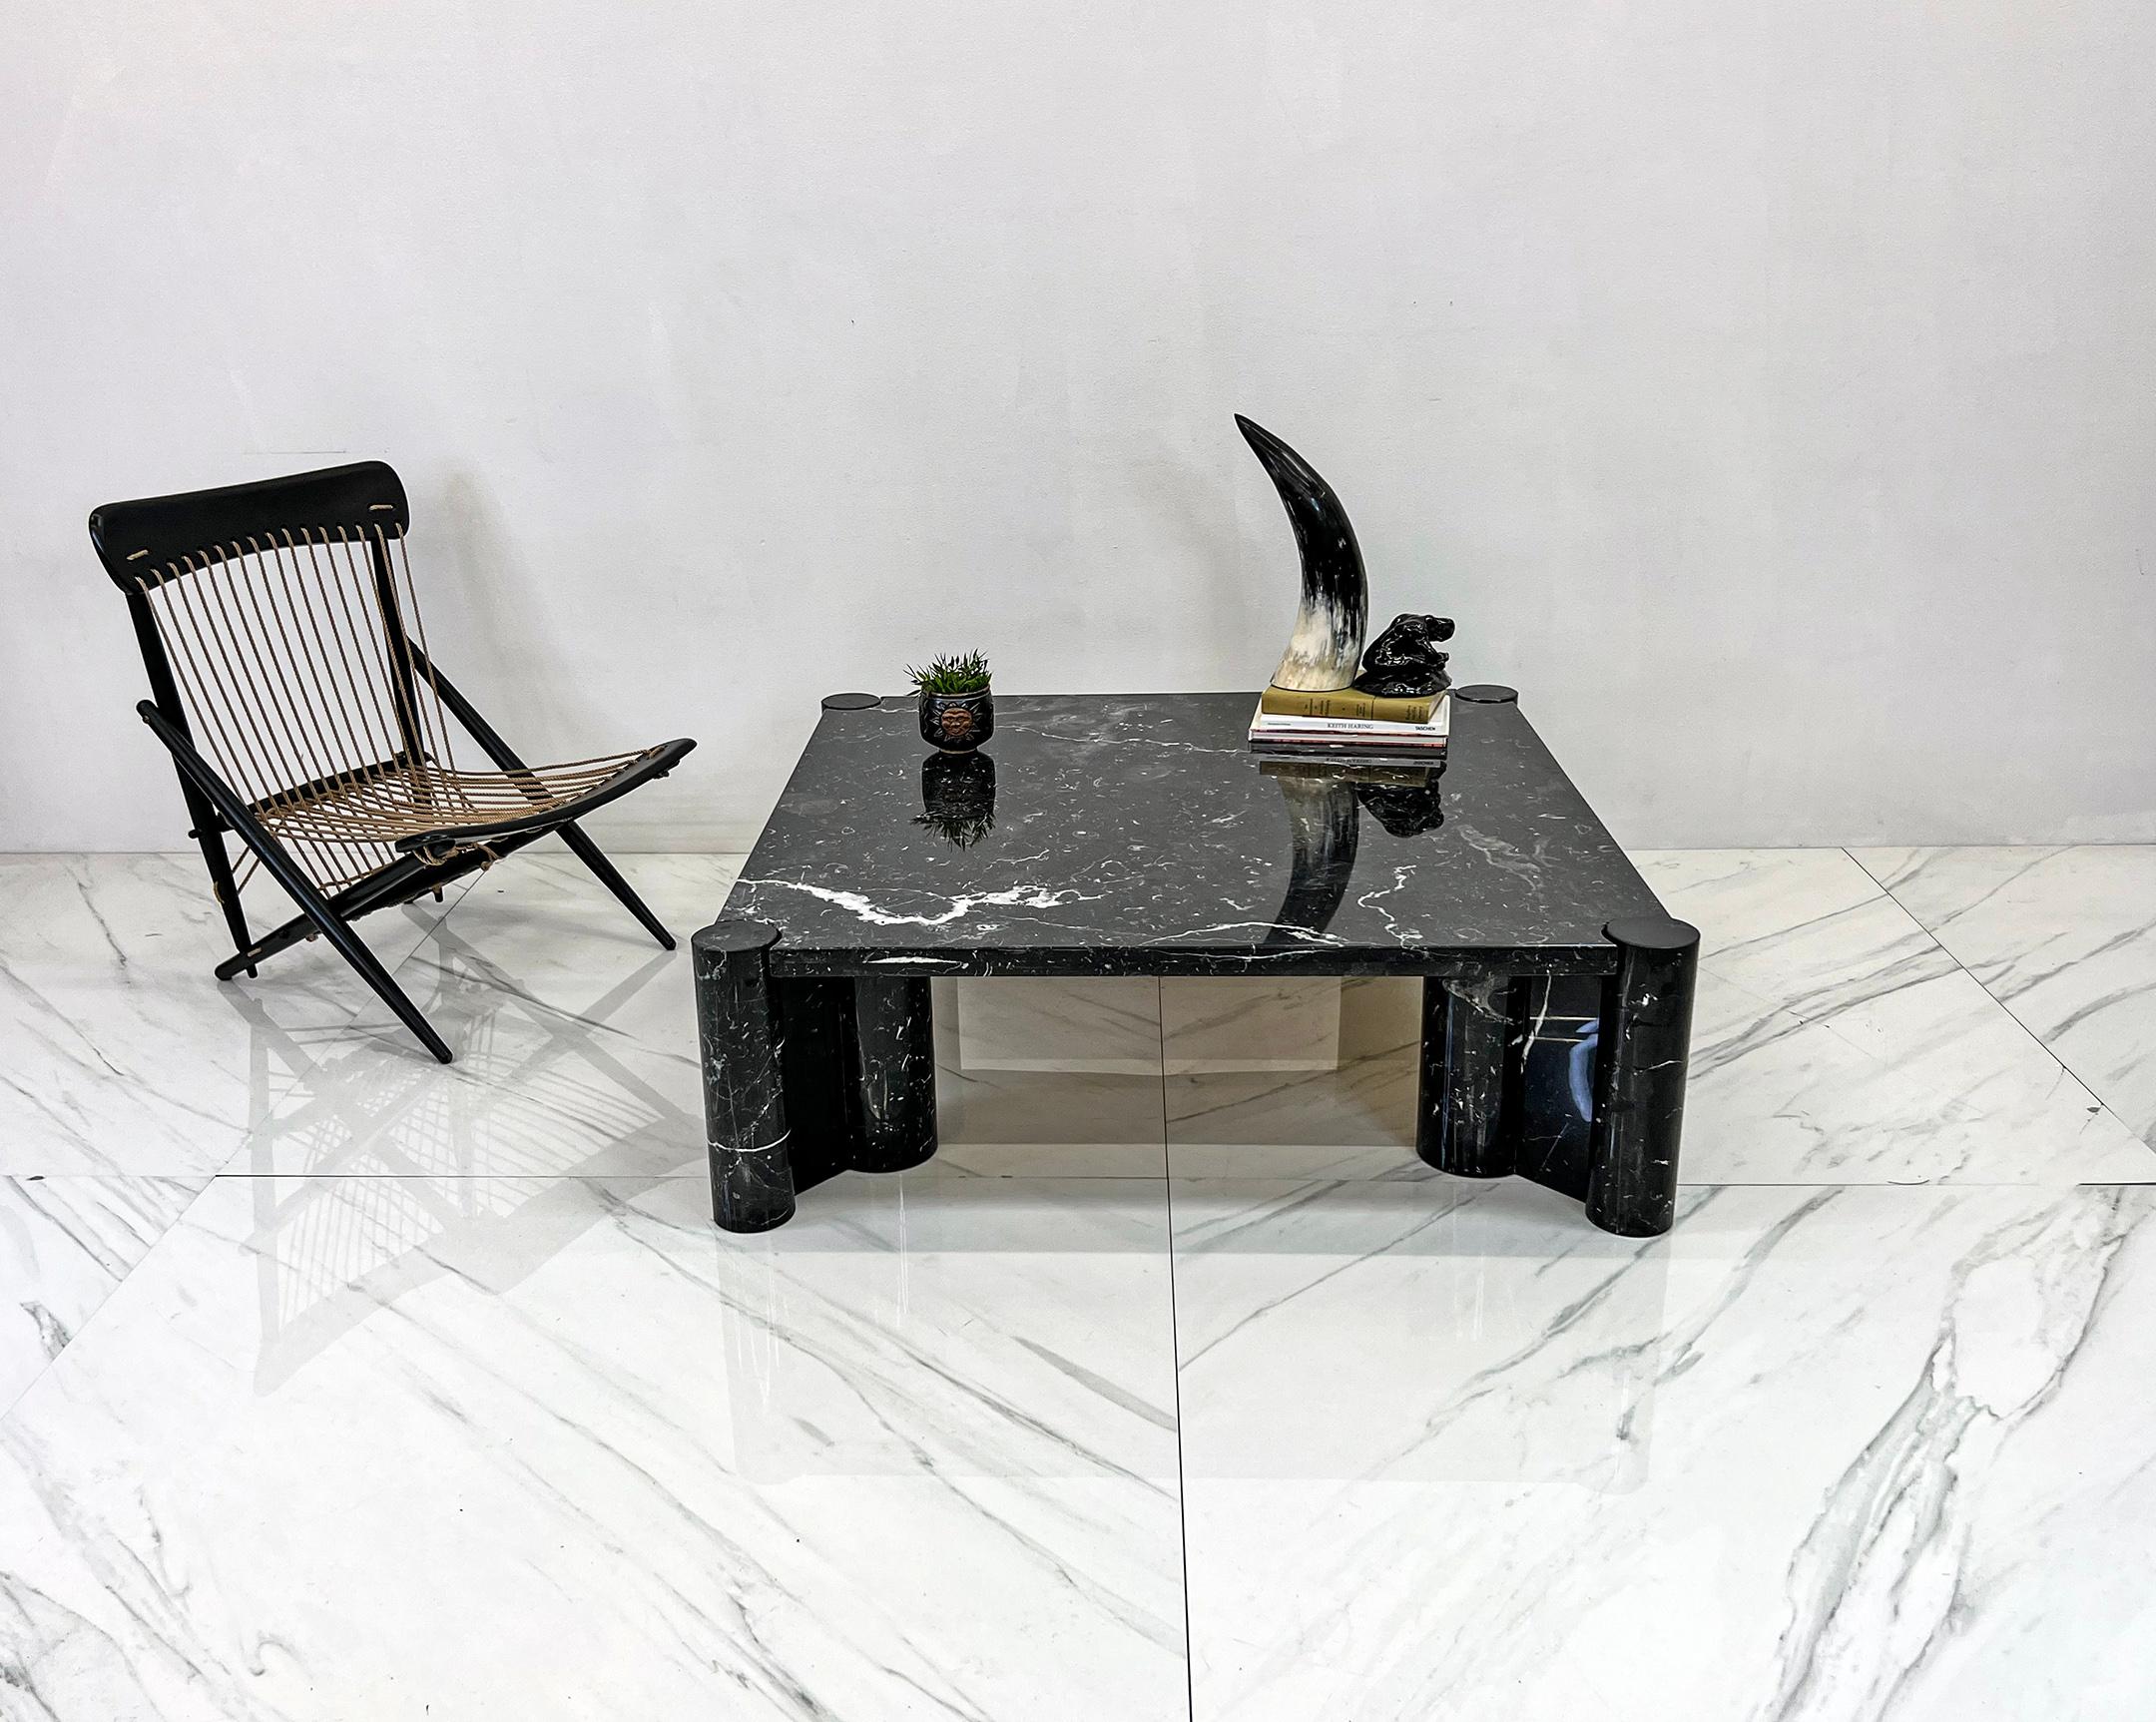 Pièce étonnante et emblématique du design moderniste, la table Jumbo de Gae Aulenti s'inspire des principes du design moderniste des années 1960, qui mettait l'accent sur la simplicité, la fonctionnalité et l'utilisation de nouveaux matériaux.

Mme